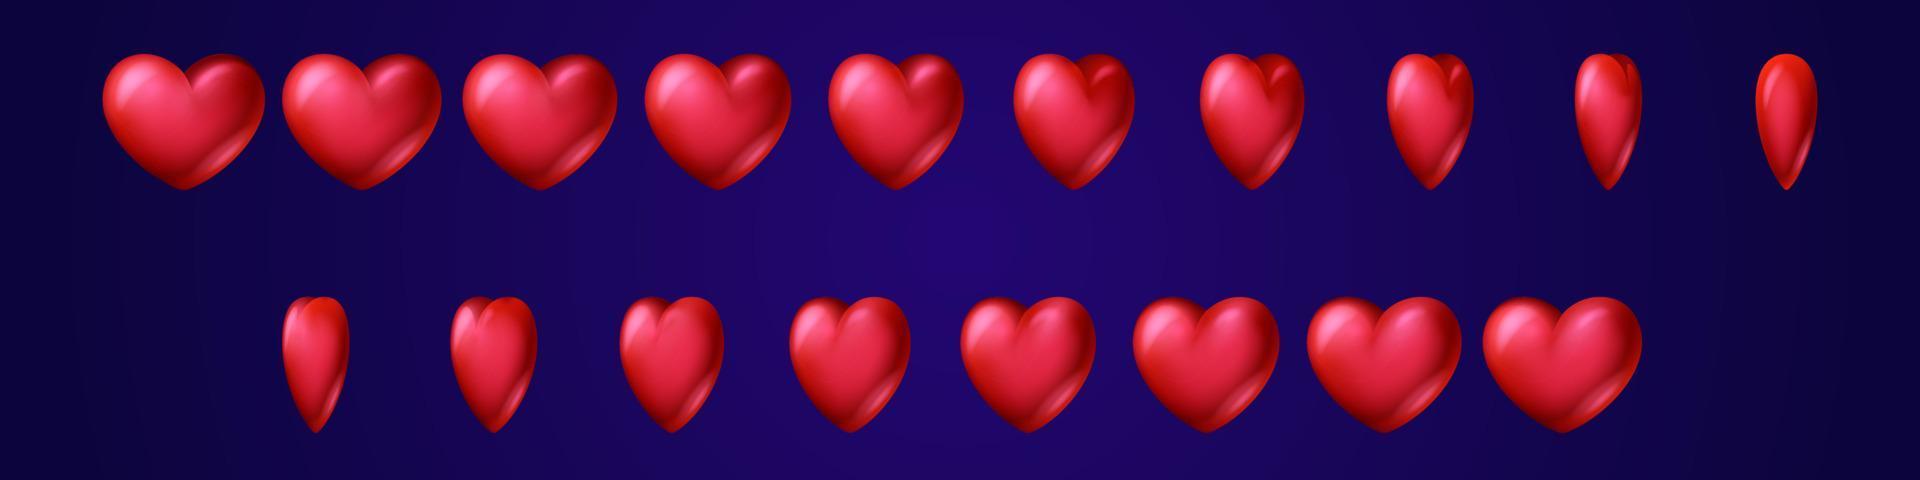 feuille de sprite d'animation de jeu de retournement de coeur rouge vecteur